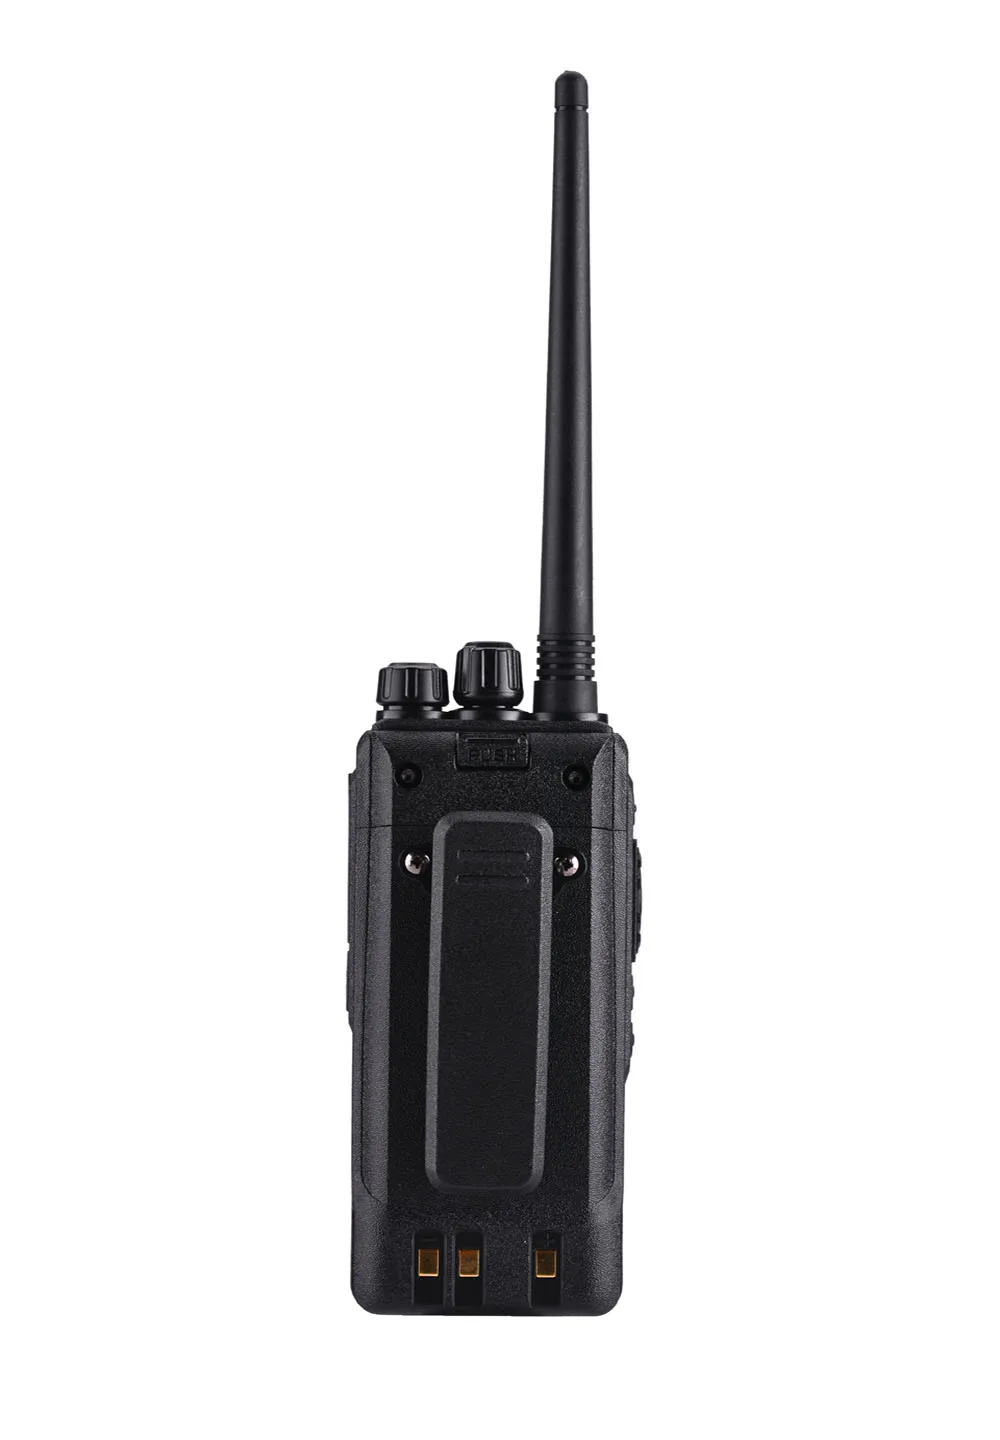 Baofeng цифровой DM-1701 Walkie Talkie Tier II DMR Ham любительская радиостанция HF трансивер цифровой двухдиапазонный двухсторонний CB радио